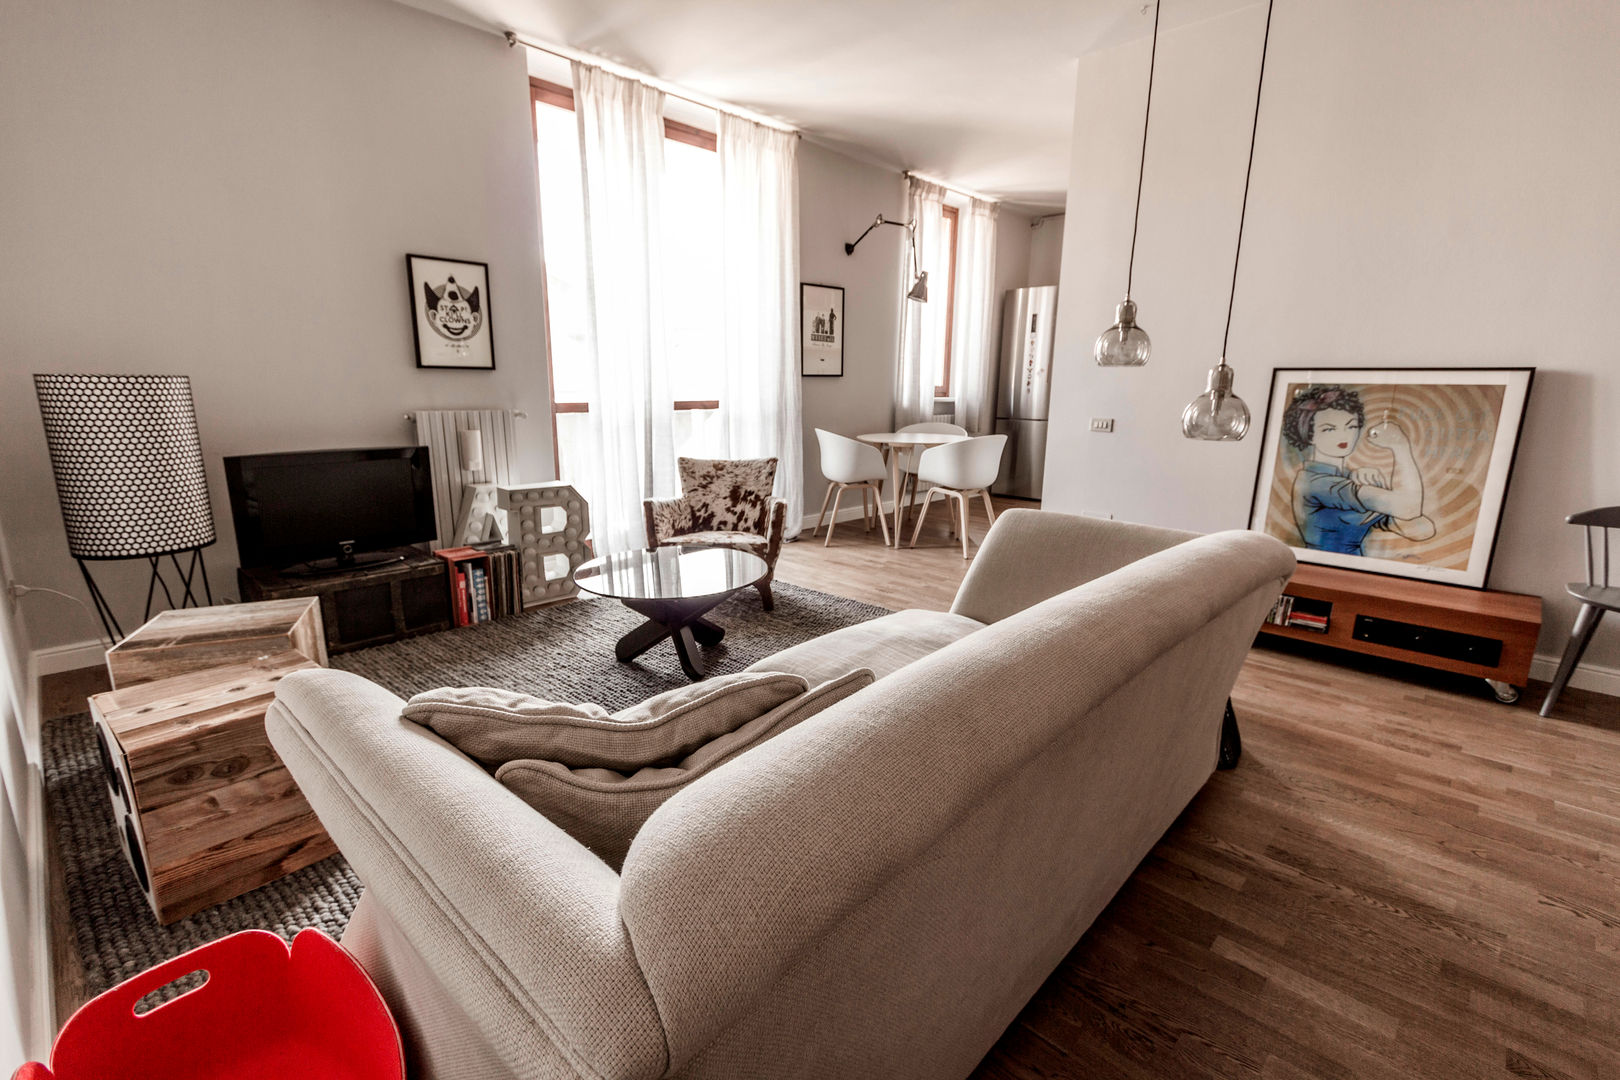 Appartamento Residenziale - Brianza 2014, Galleria del Vento Galleria del Vento Ruang Keluarga Gaya Skandinavia